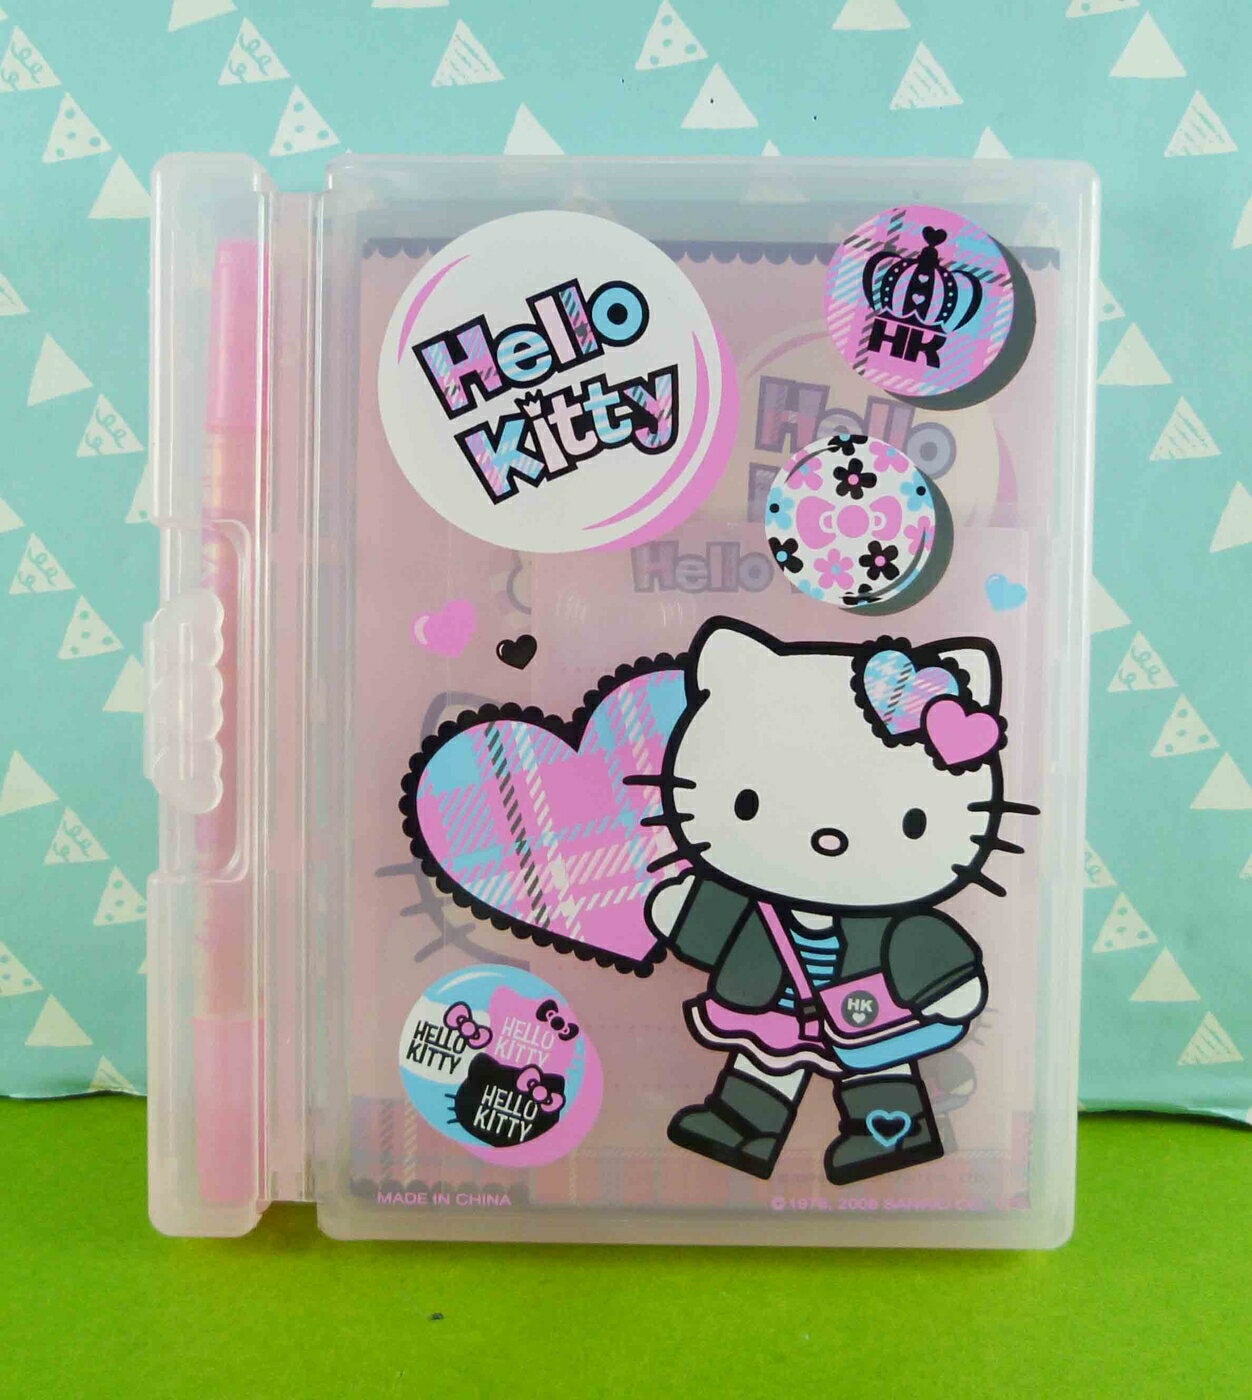 【震撼精品百貨】Hello Kitty 凱蒂貓 文具組-附盒-走圖案 震撼日式精品百貨